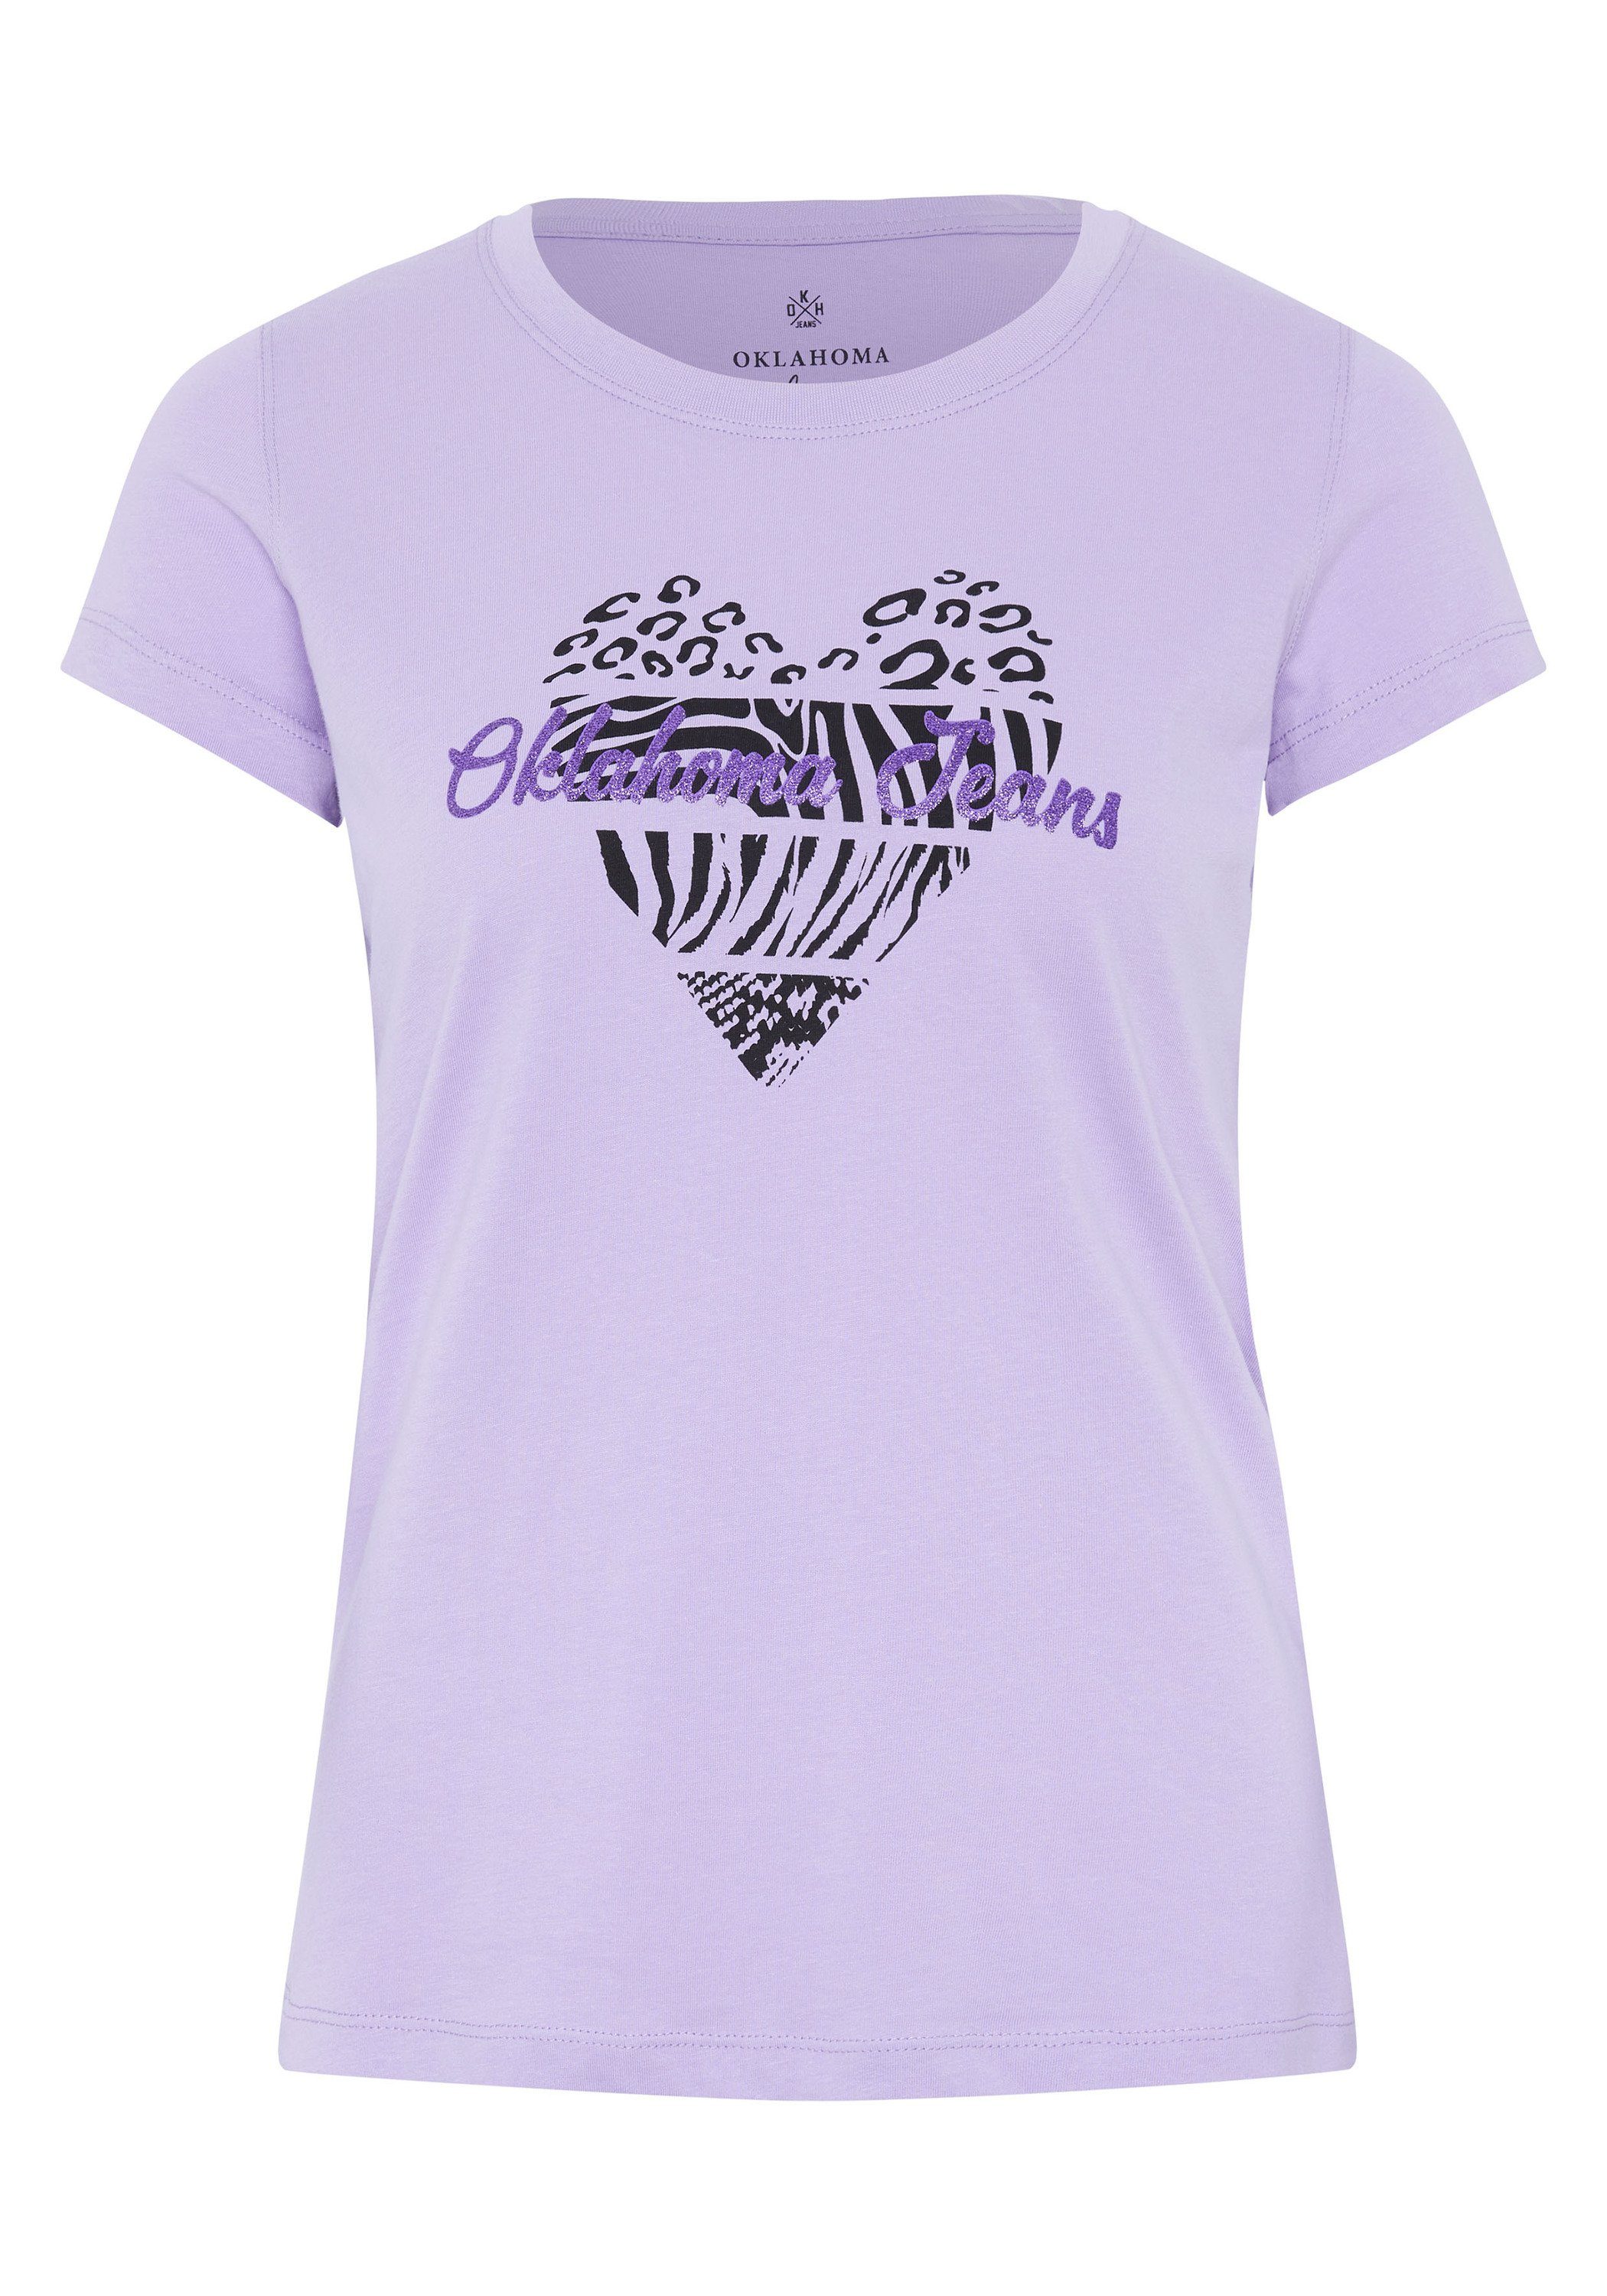 Rose mit 15-3716 Jeans Logo-Schriftzug Herz-Motiv Purple und Oklahoma Print-Shirt